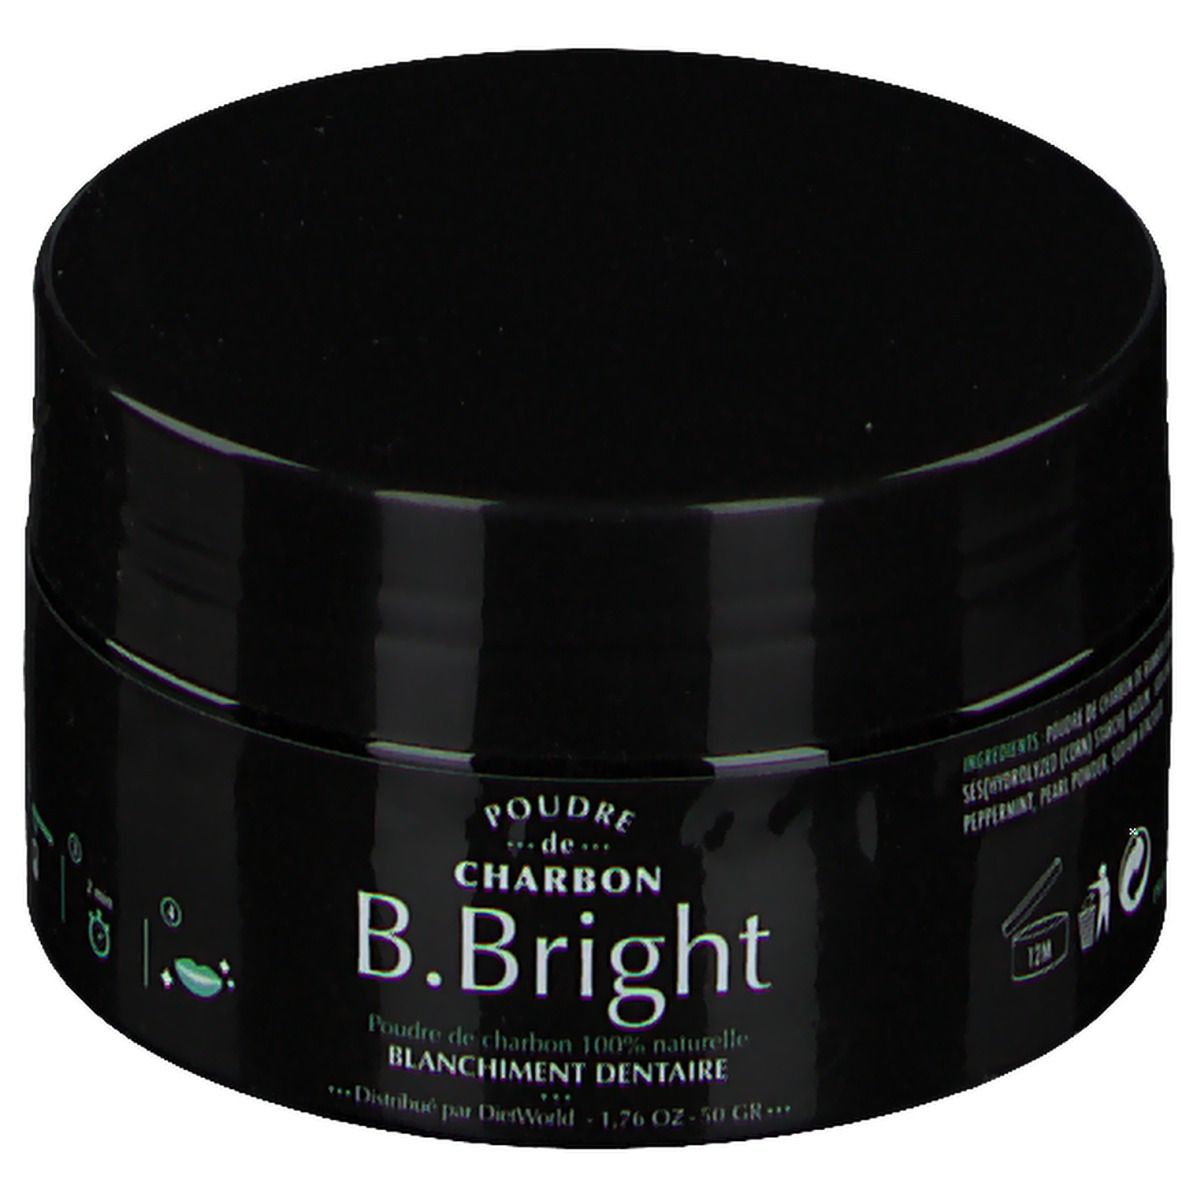 B. Bright Poudre de Charbon Blanchiment dentaire 50 g - Redcare